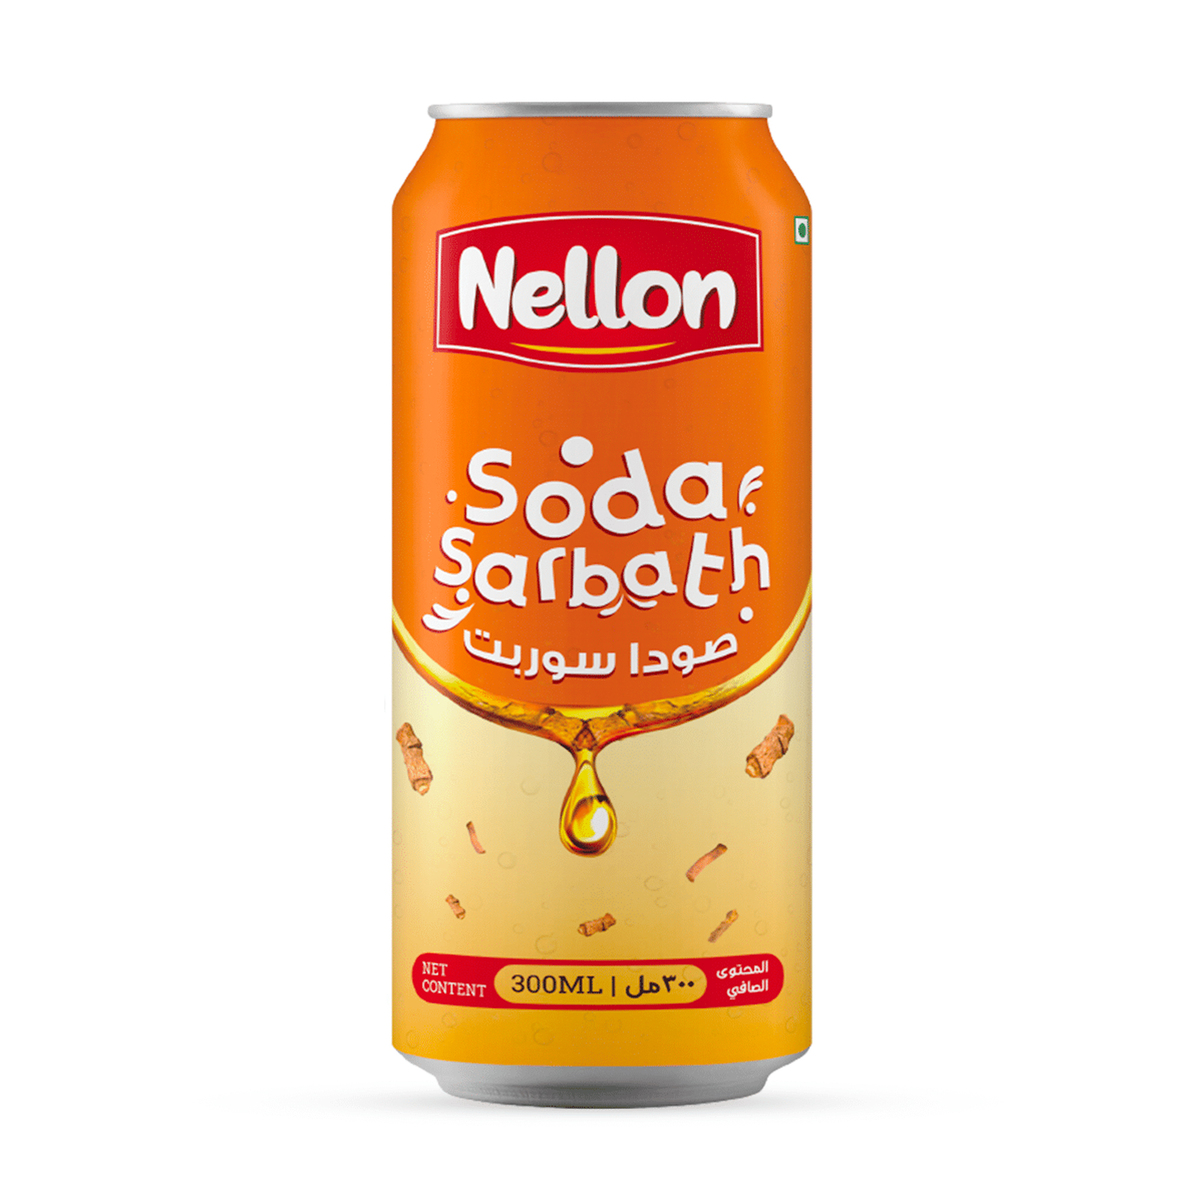 Nellon Soda Sarbath Nannari Value Pack 6 x 300 ml